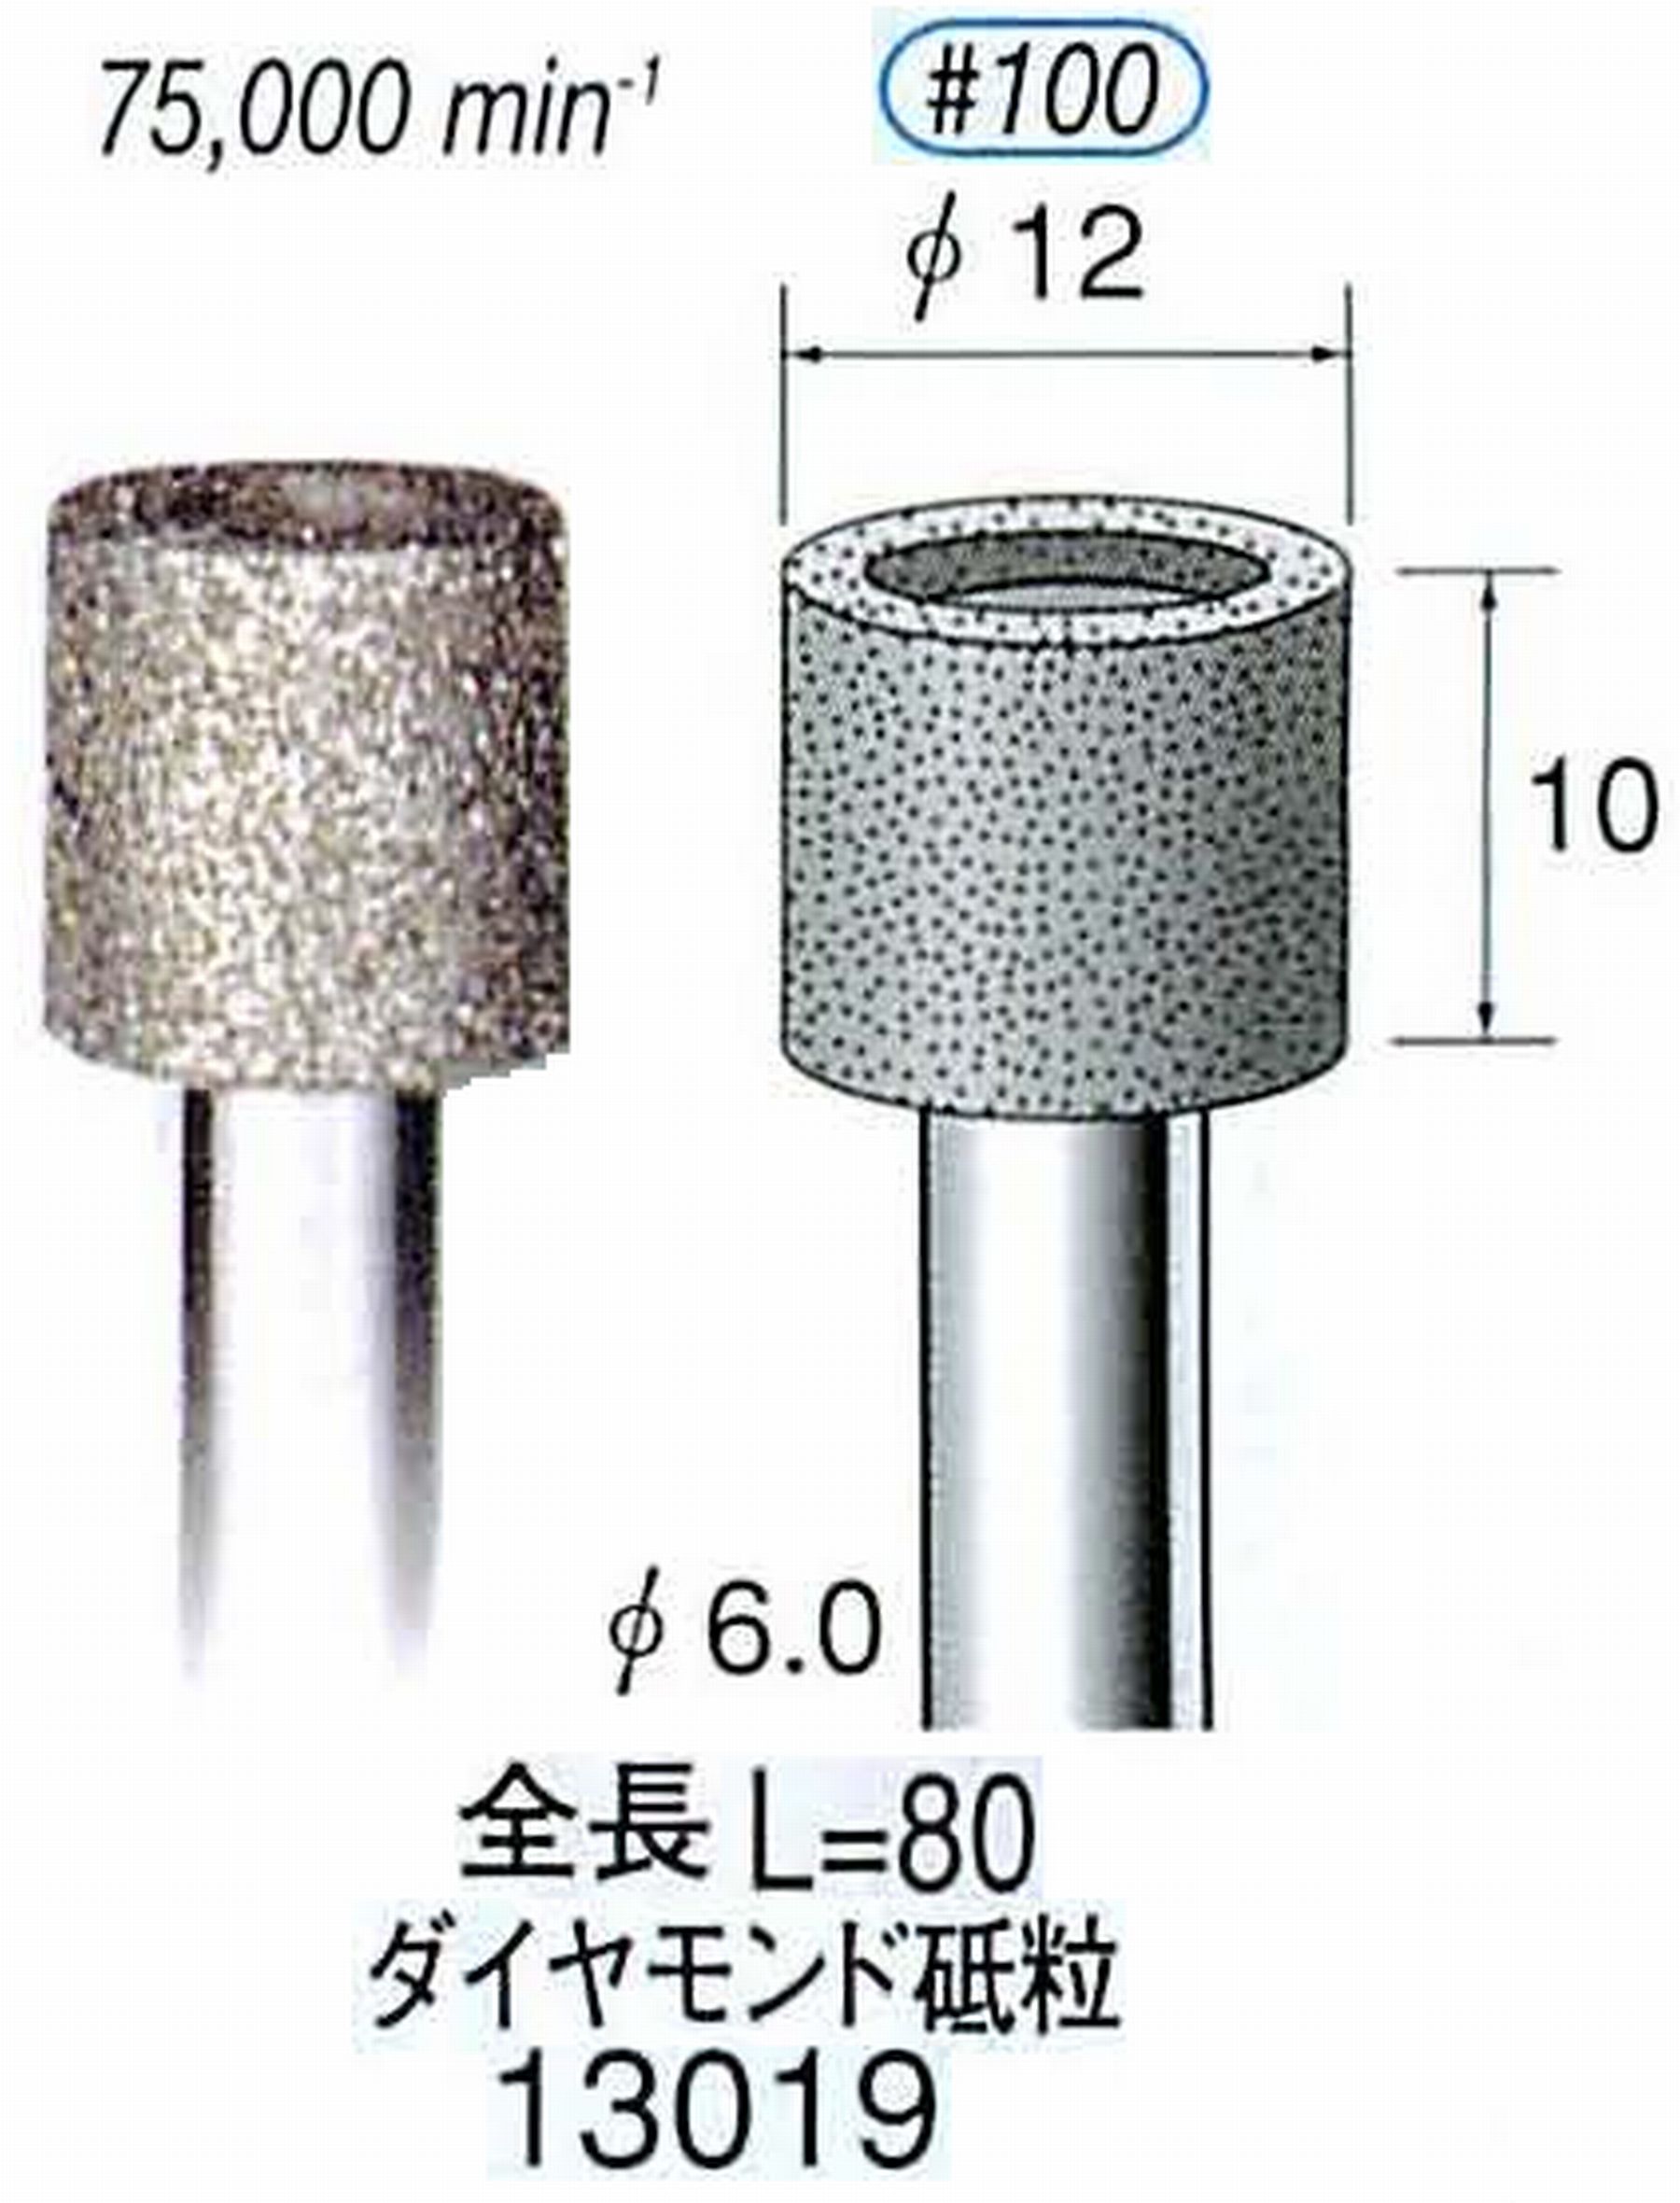 ナカニシ/NAKANISHI 電着ダイヤモンド ダイヤモンド砥粒 軸径(シャンク)φ6.0mm 13019